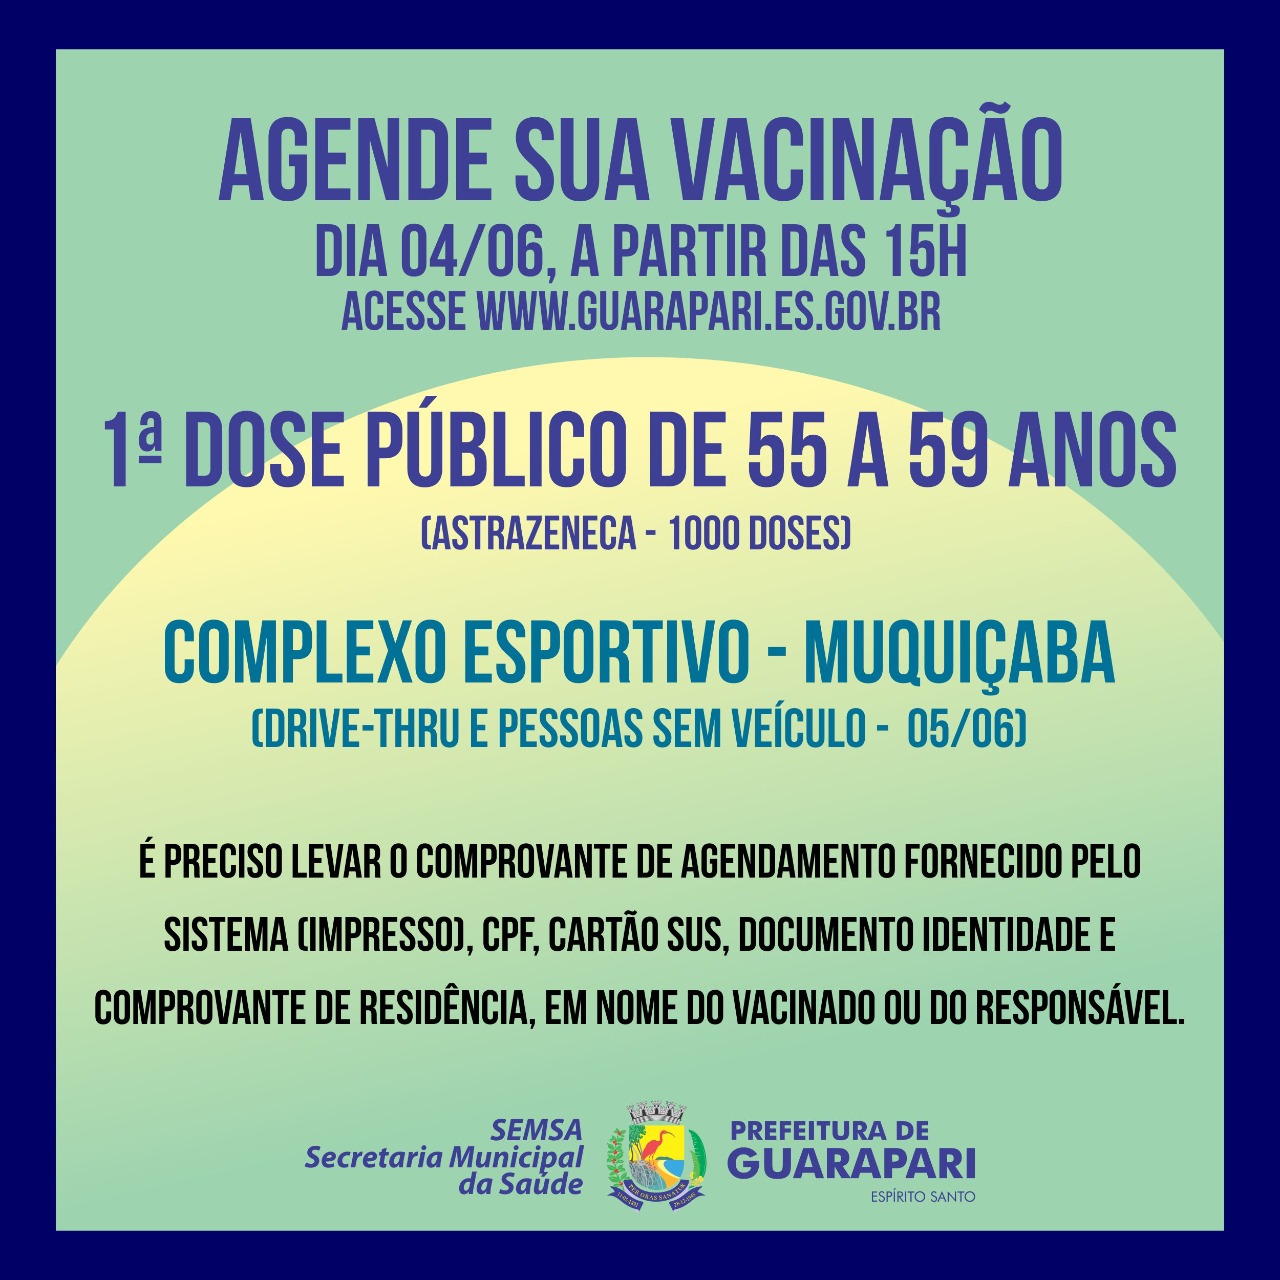 Covid-19: Nesta sexta-feira tem agendamento de vacinação para pessoas entre 55 e 59 anos em Guarapari  – Astrazeneca 